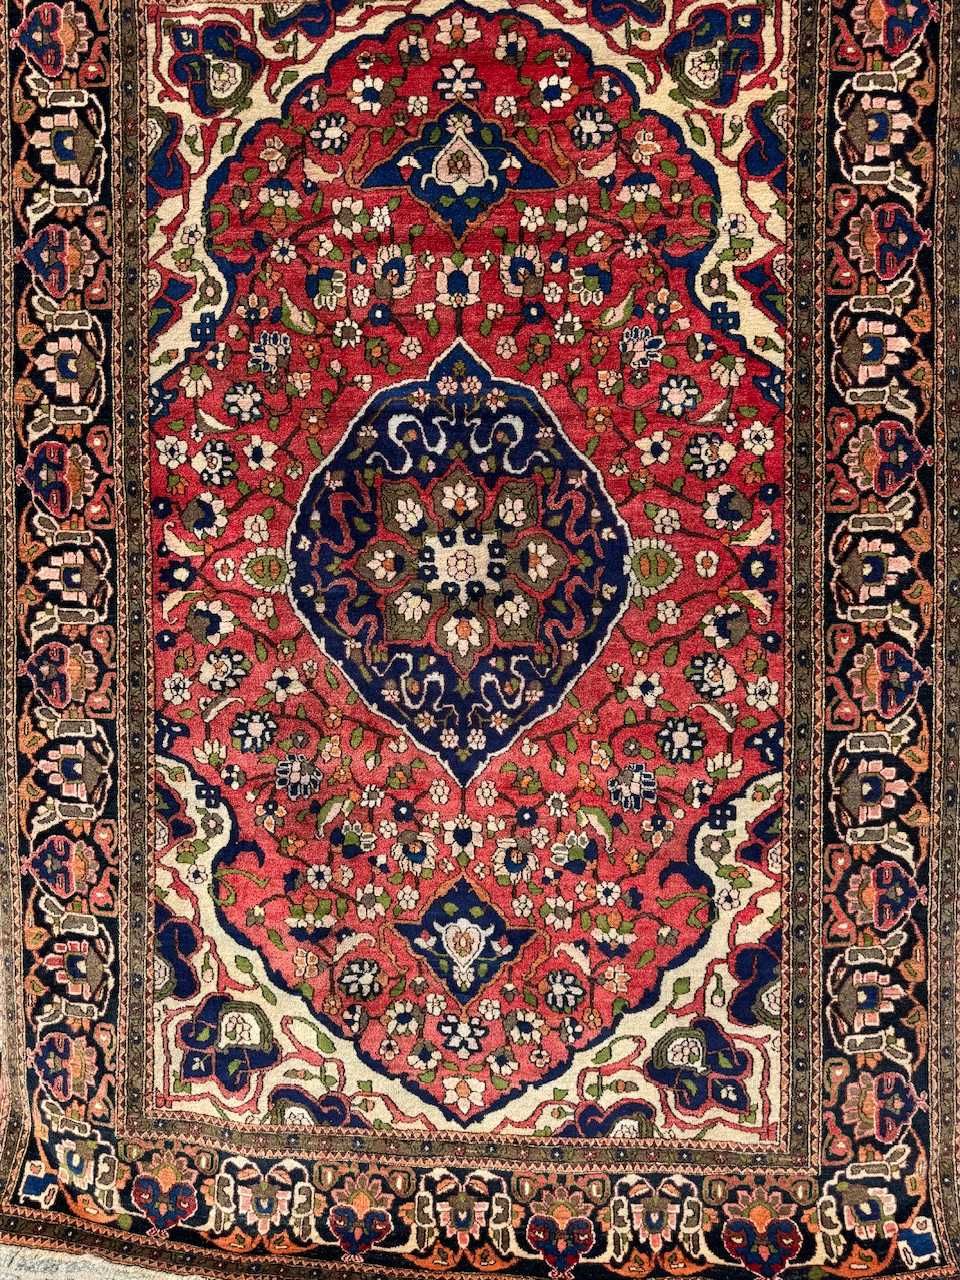 Vintage dywan wełniany r. tkany perski Ushak 215x148 galeria 15 tyś